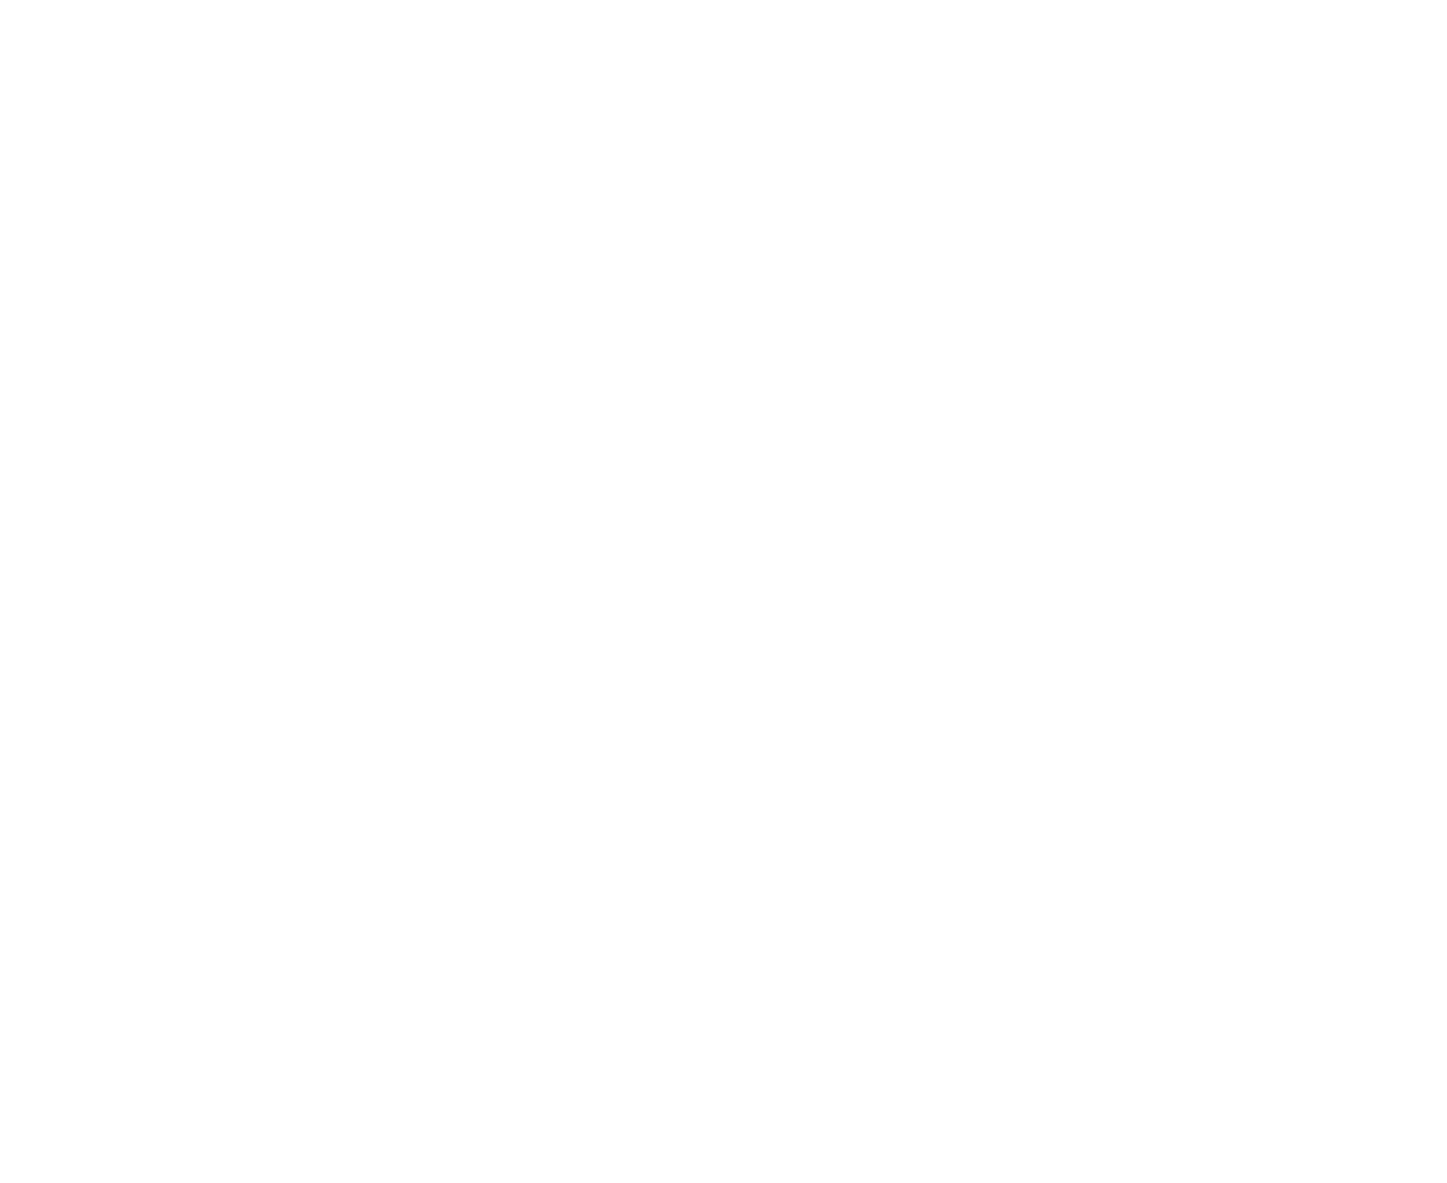 Invest Bank logo for dark backgrounds (transparent PNG)